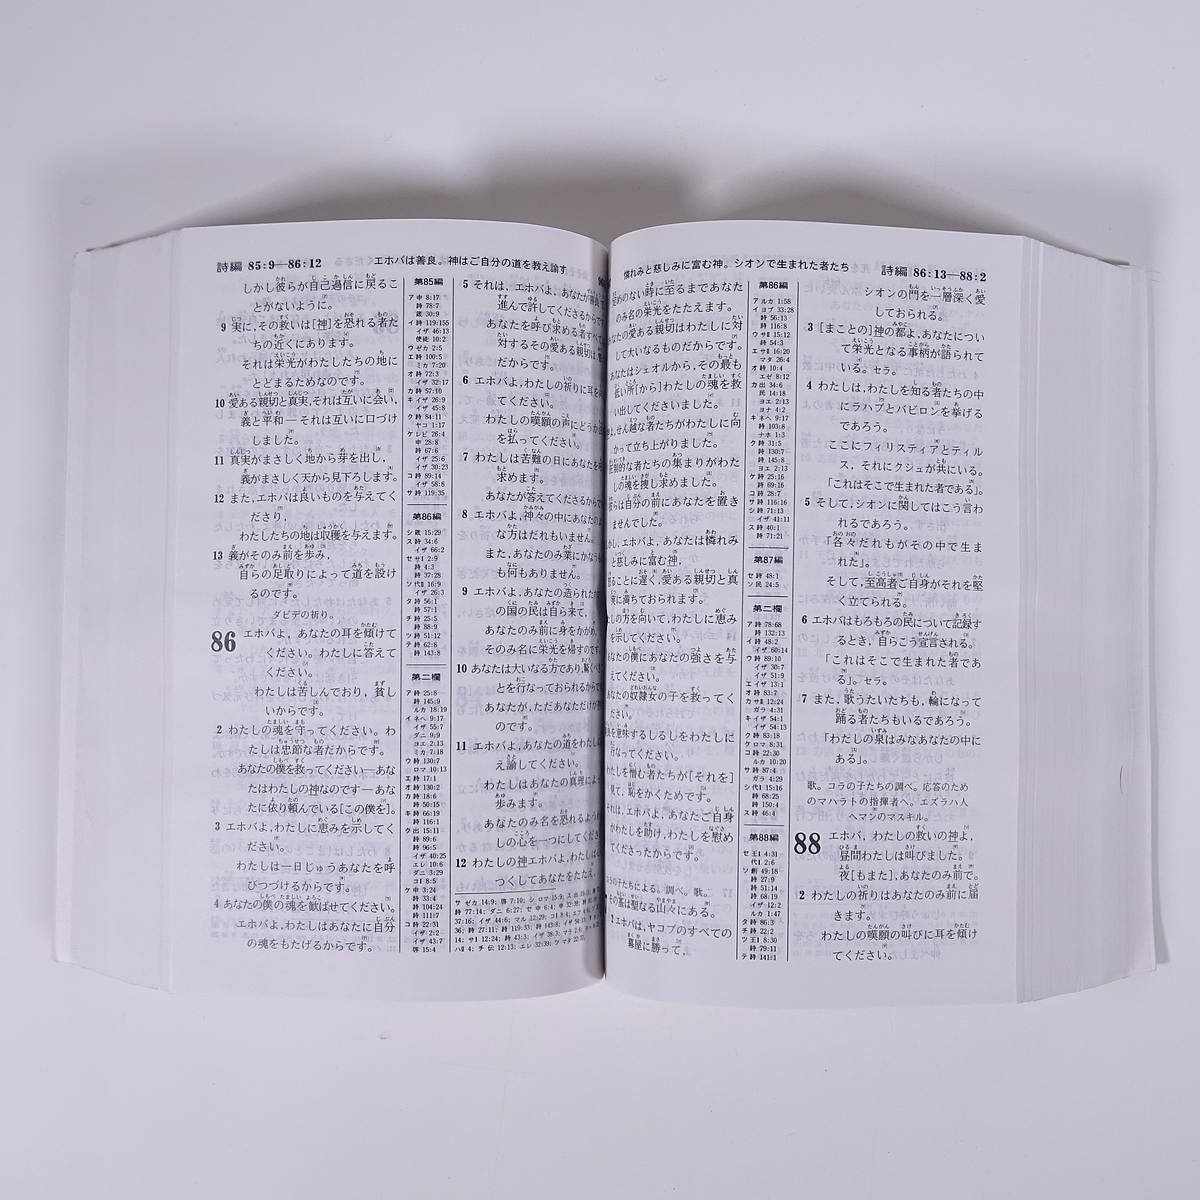 聖書 新世界訳 1985年 日本語版 エホバの証人 ものみの塔聖書冊子協会 単行本 ペーパーバック キリスト教 旧約聖書 新約聖書_画像9